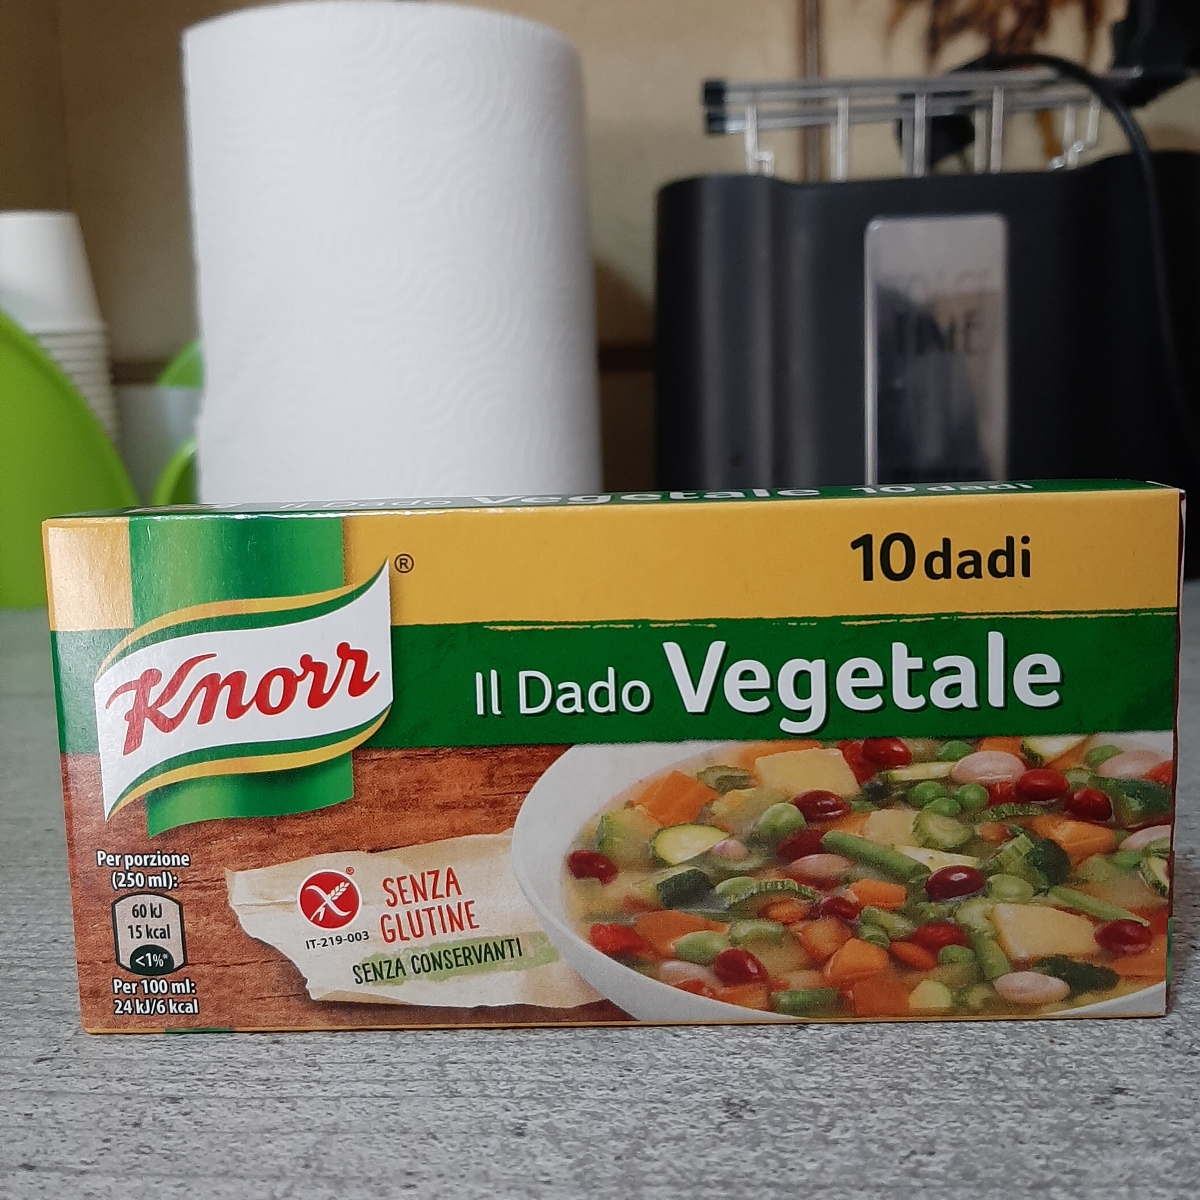 Knorr Dado vegetale Review